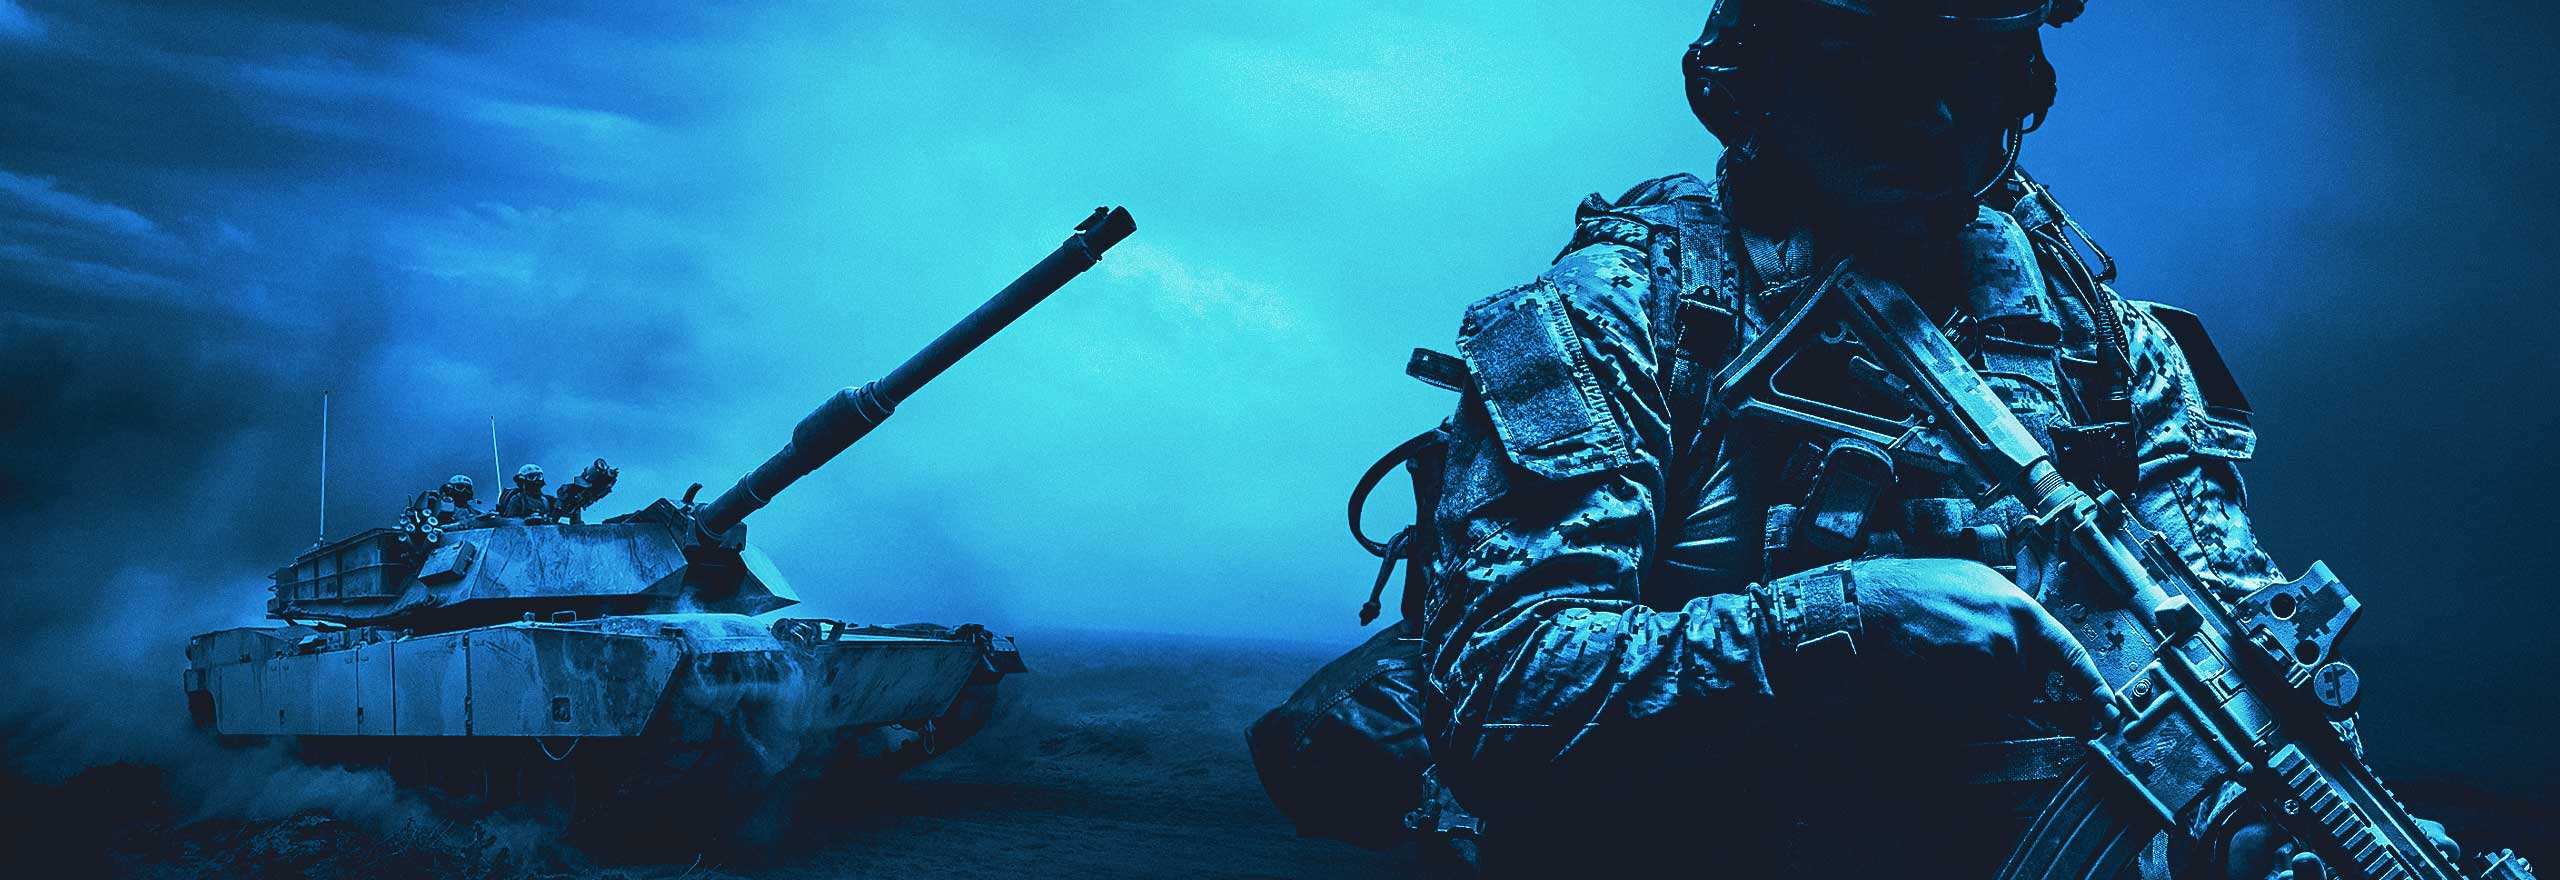 Un'immagine colorata di blu con un soldato, un carro armato e degli elicotteri.